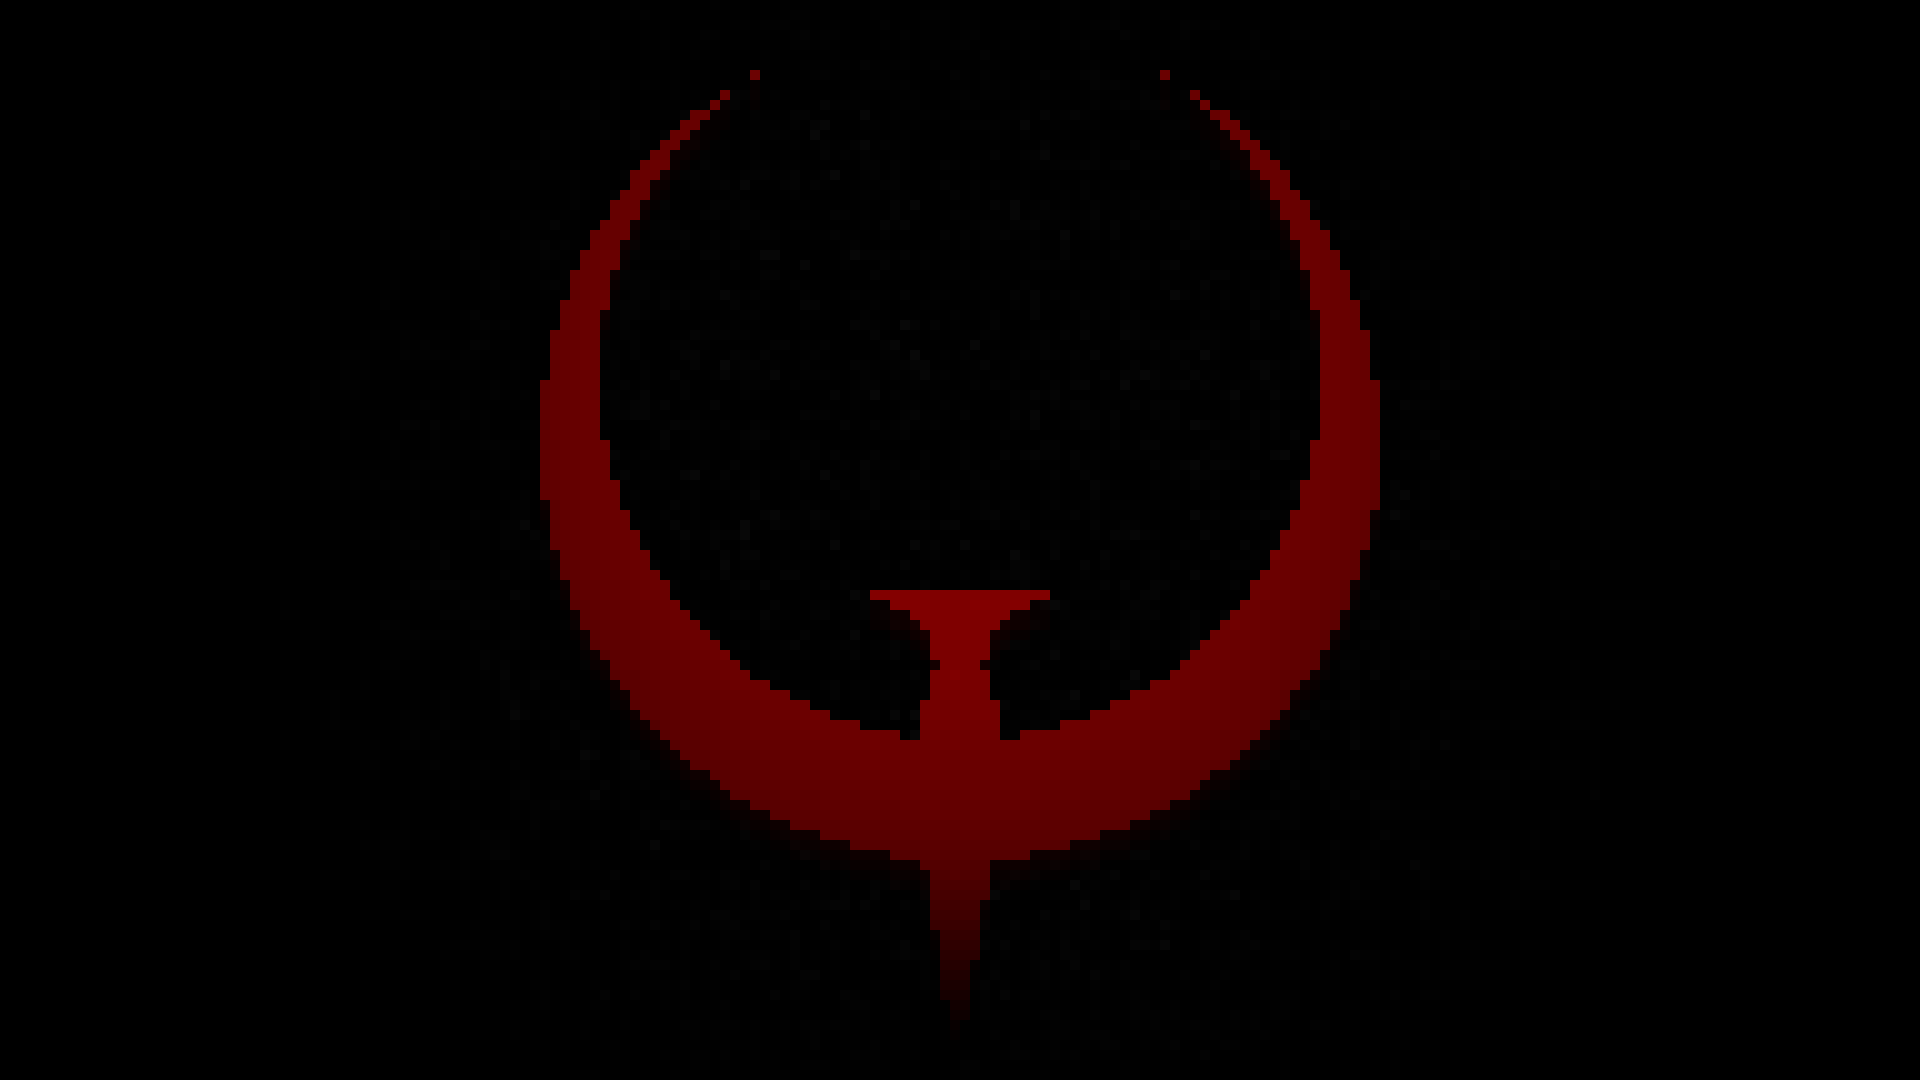 Quake Logo Wallpaper HD  PixelsTalkNet